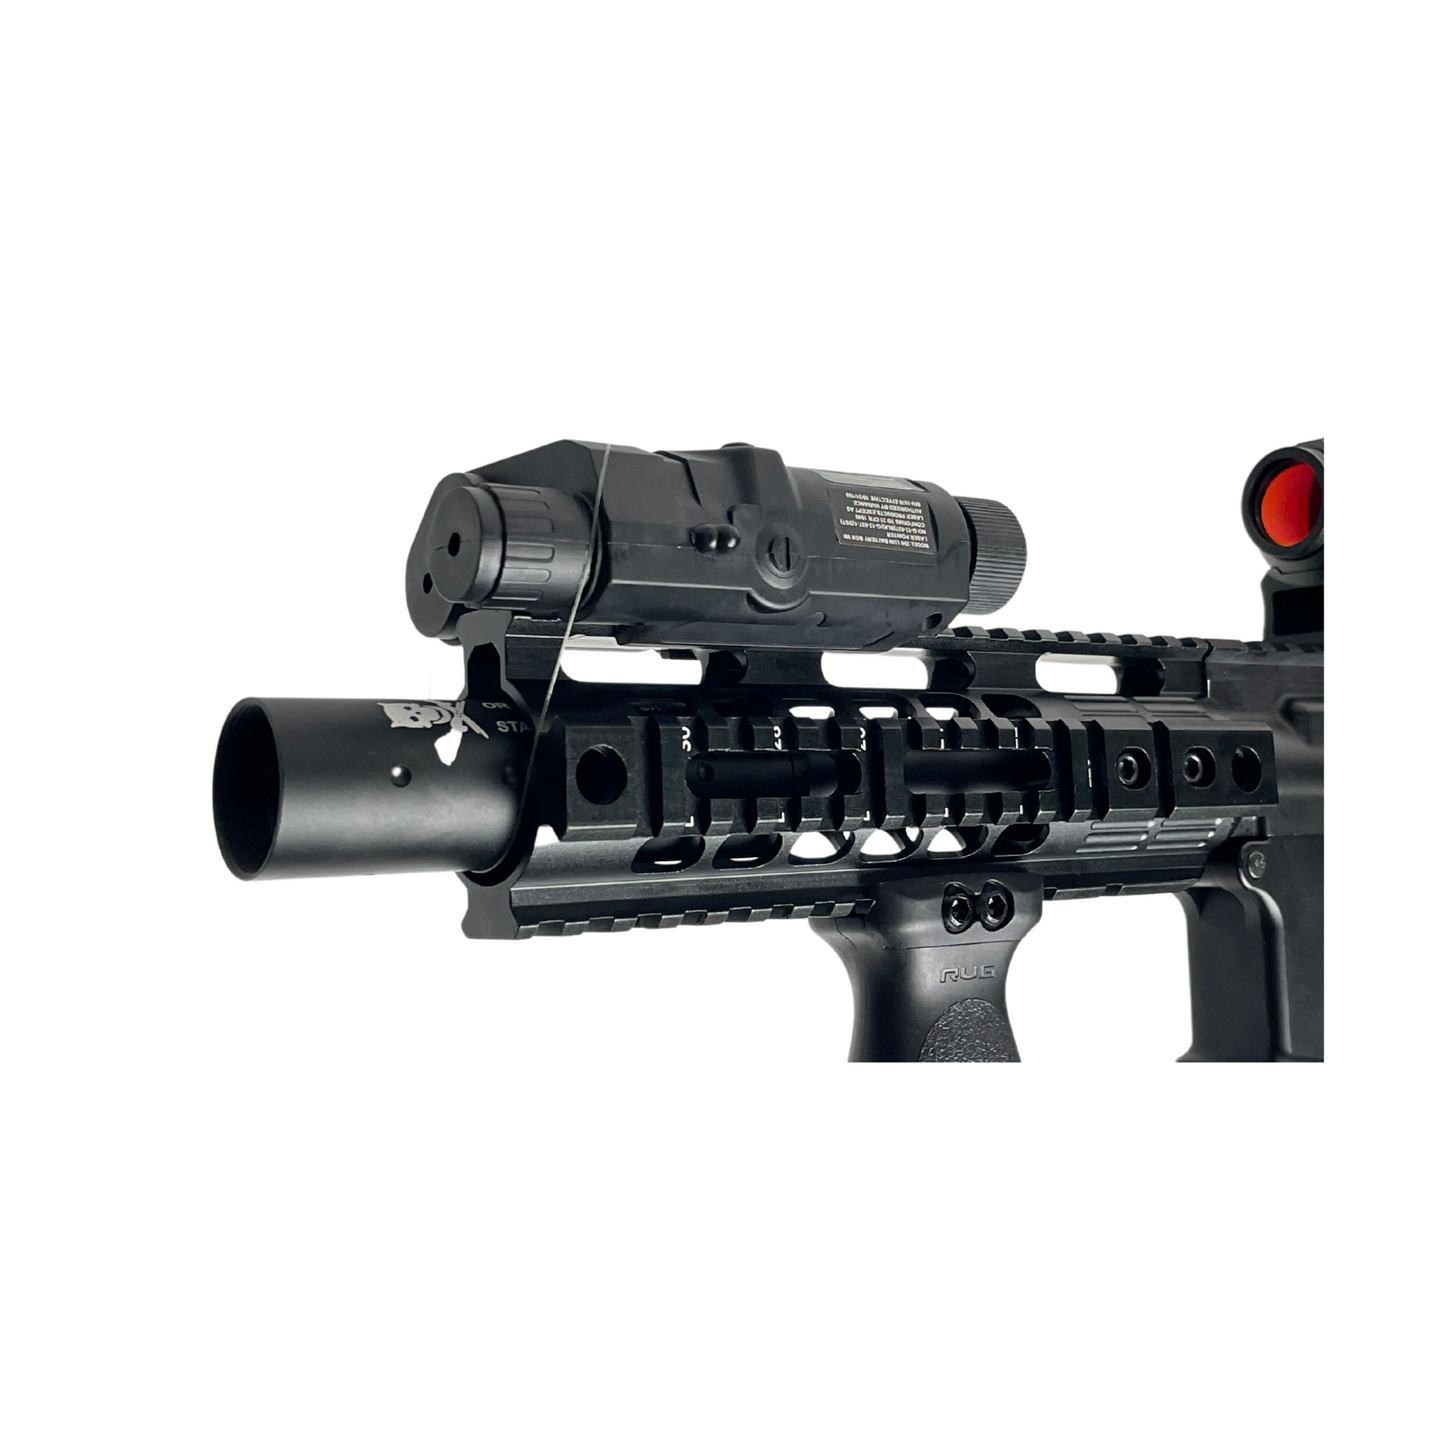 Custom GBBR CQB Tactical Gas Blow Back Rifle - Gel Blaster